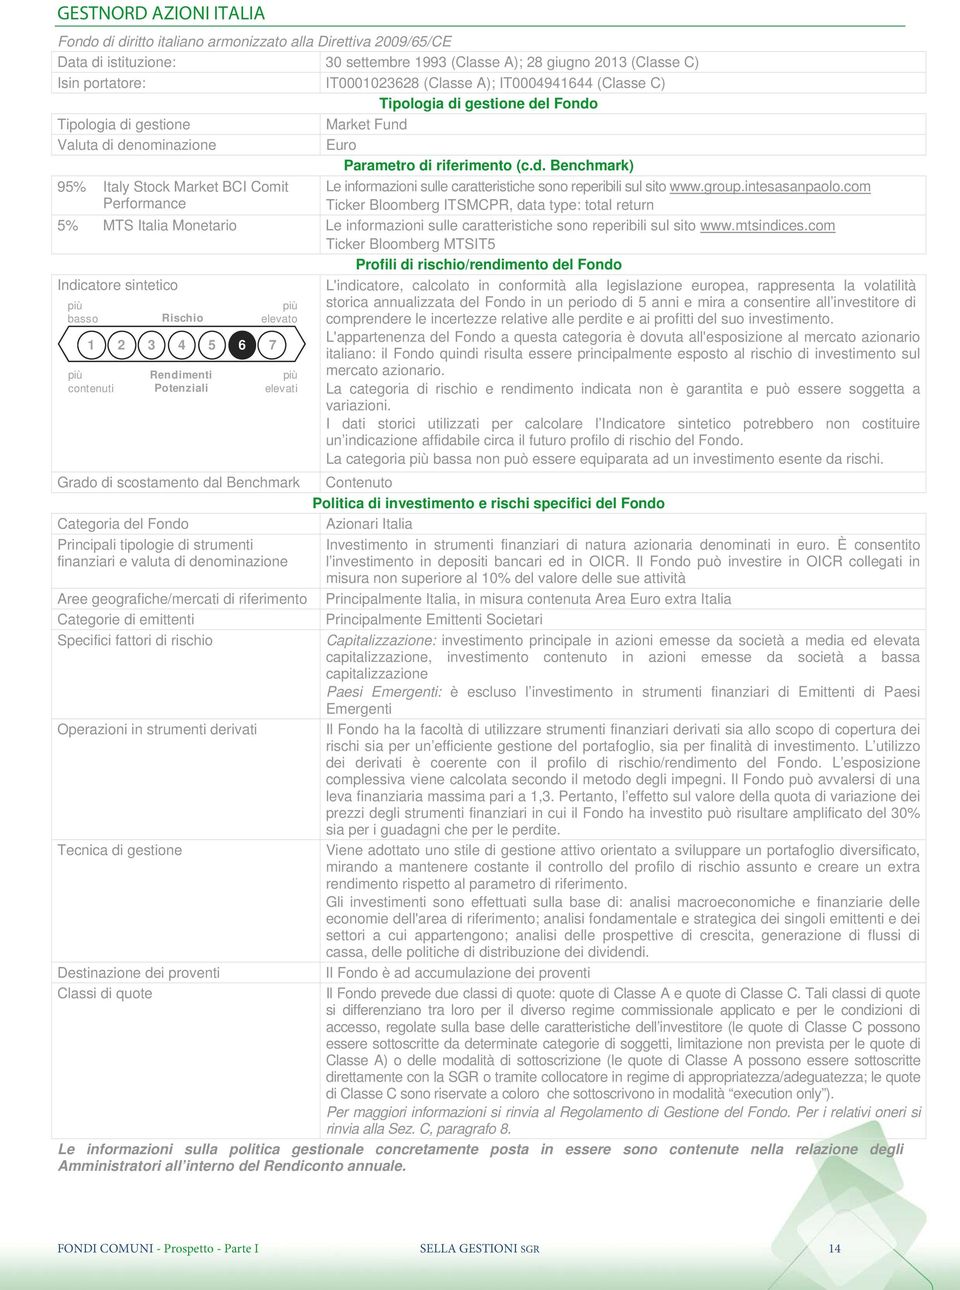 com Ticker Bloomberg ITSMCPR, data type: total return 5% MTS Italia Monetario Le informazioni sulle caratteristiche sono reperibili sul sito www.mtsindices.